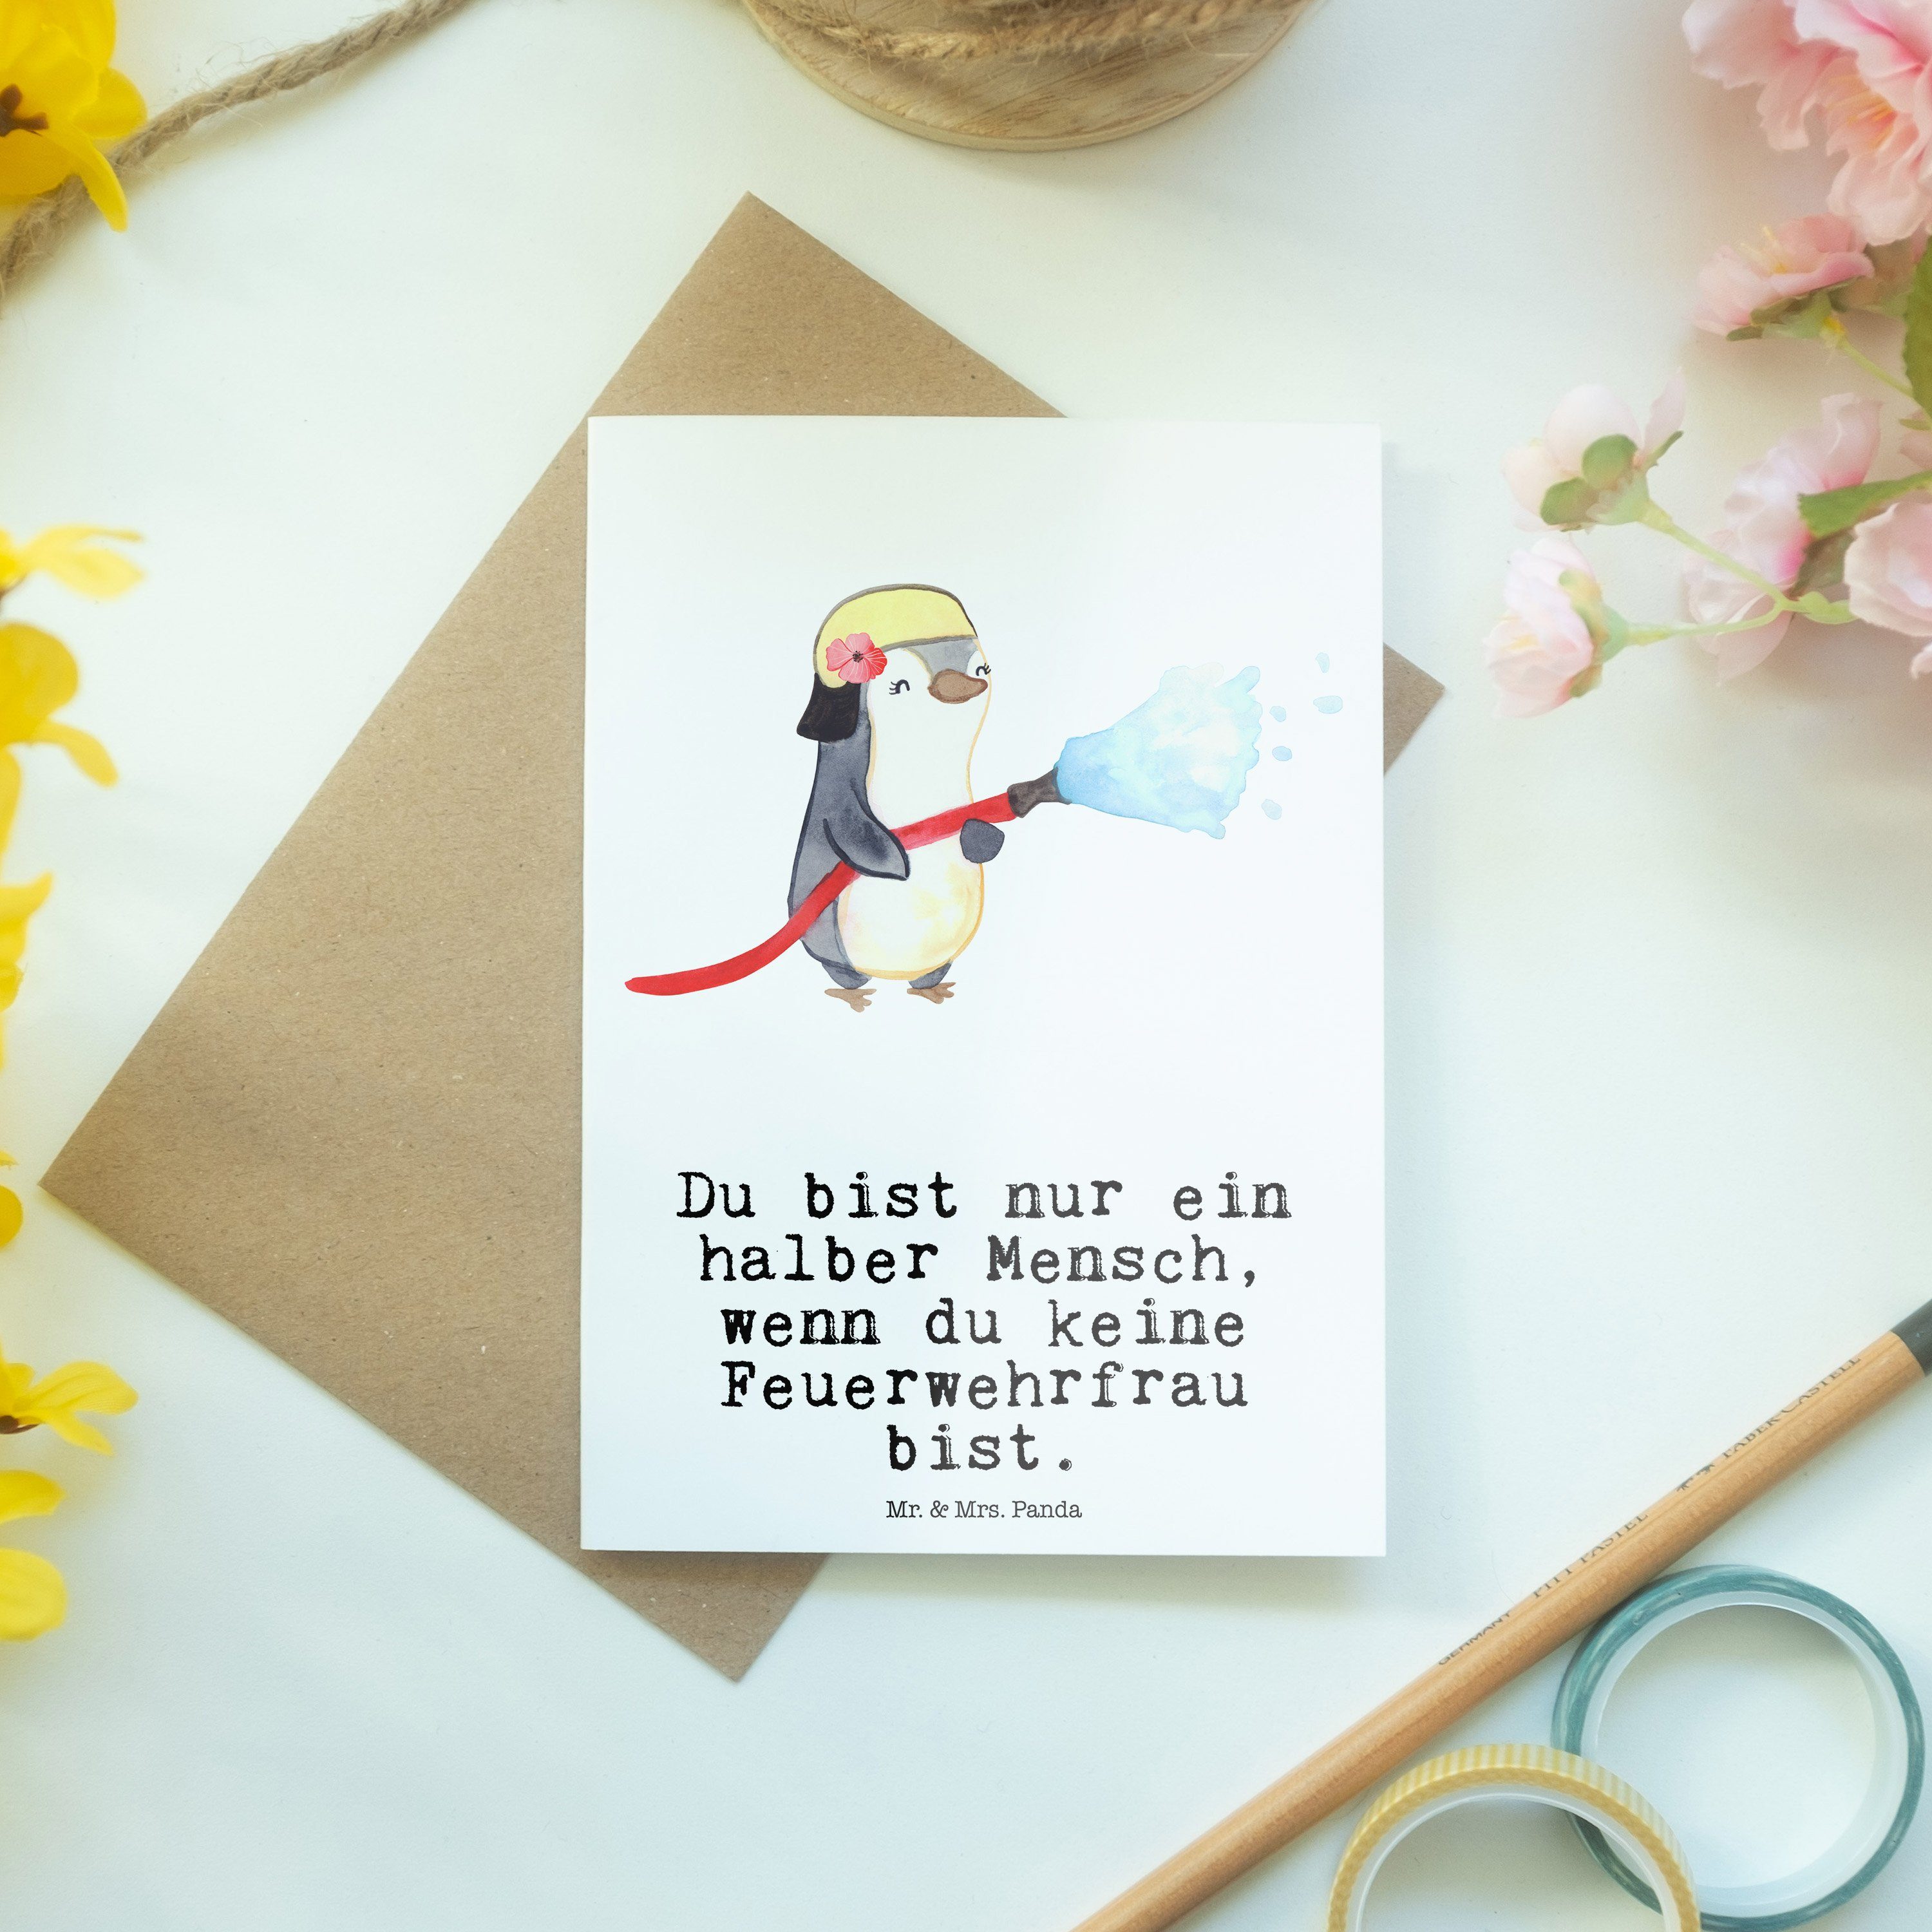 Mr. & Mrs. Panda Weiß Grußkarte Einladungskarte, Feuerwehrfrau - mit Feuerwehrh Herz - Geschenk